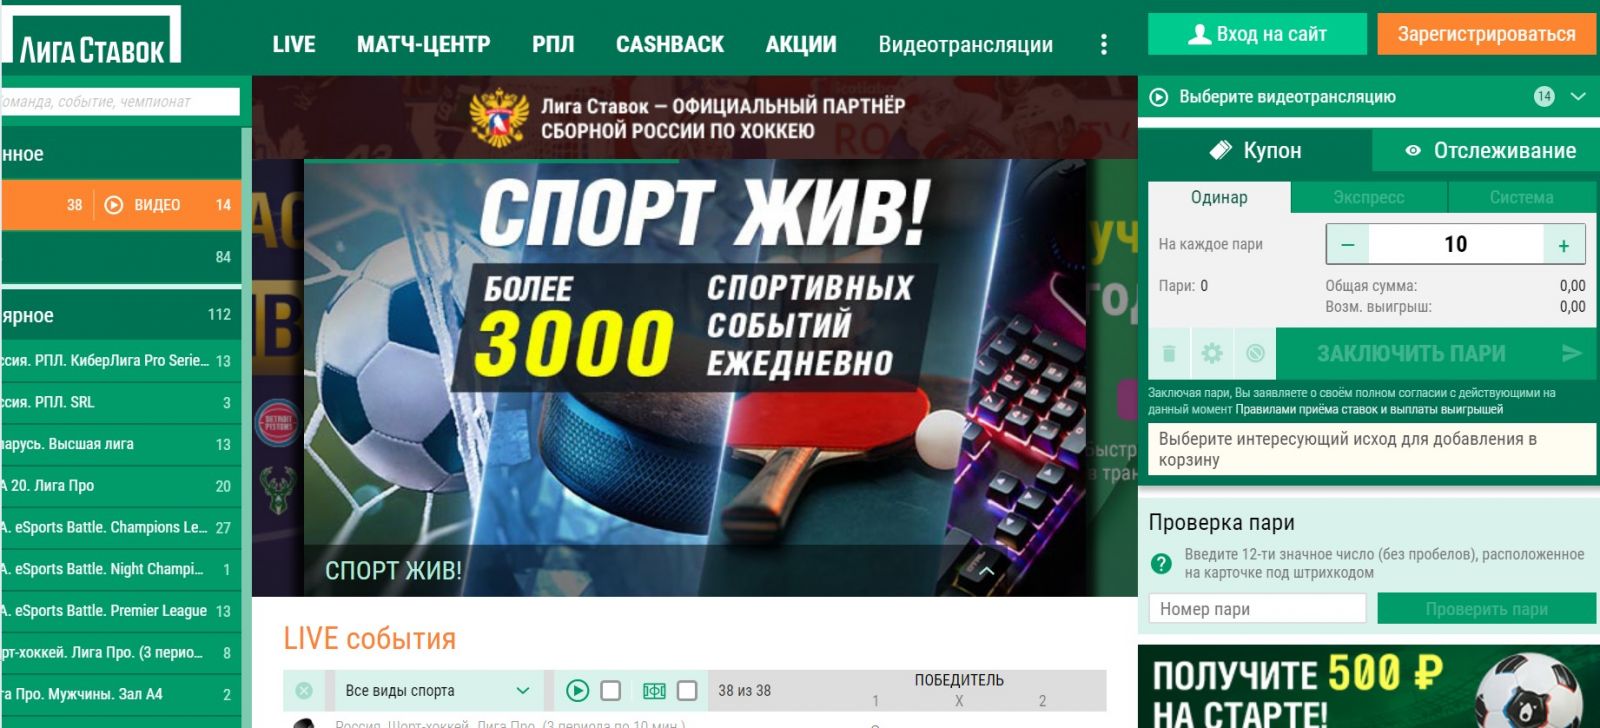 Ставки на спорт российские компании казино онлайн топ top casinoru win